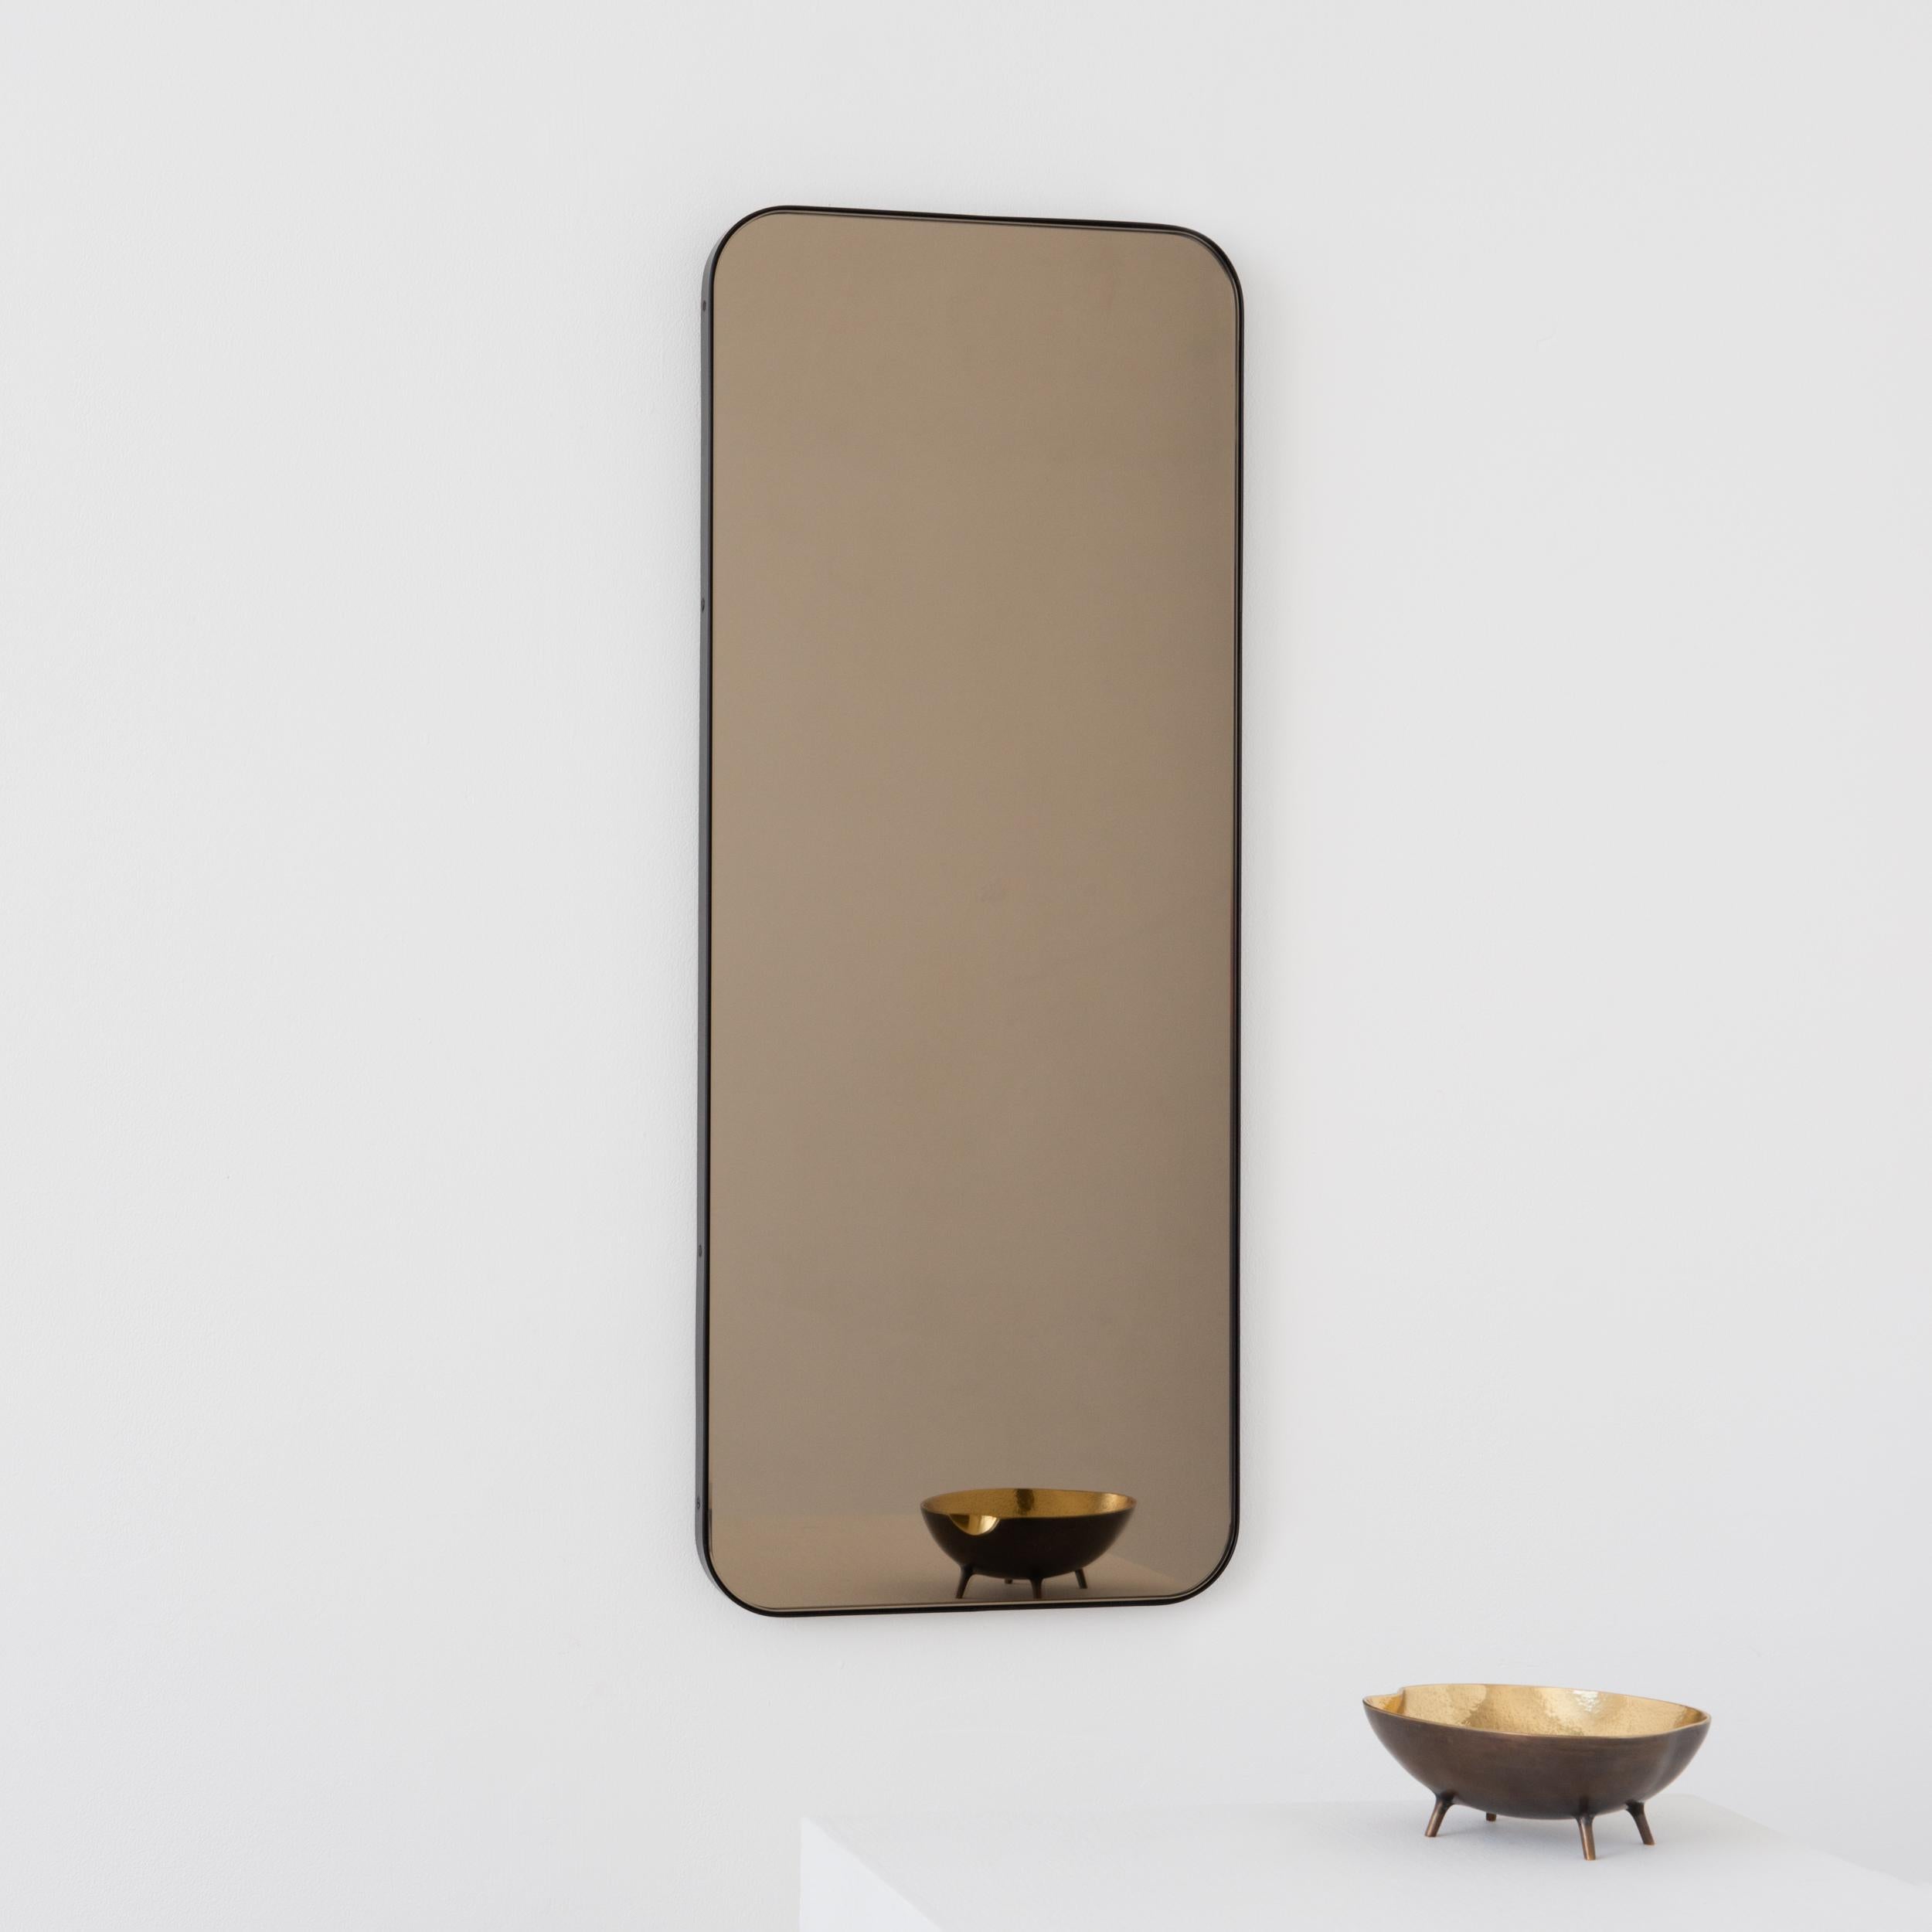 Moderner rechteckiger Spiegel mit einem eleganten Rahmen aus massivem, bronzefarben patiniertem Messing. Teil der charmanten Quadris Kollektion, entworfen und handgefertigt in London, UK. 

Die mittelgroßen, großen und extragroßen Spiegel (37 cm x